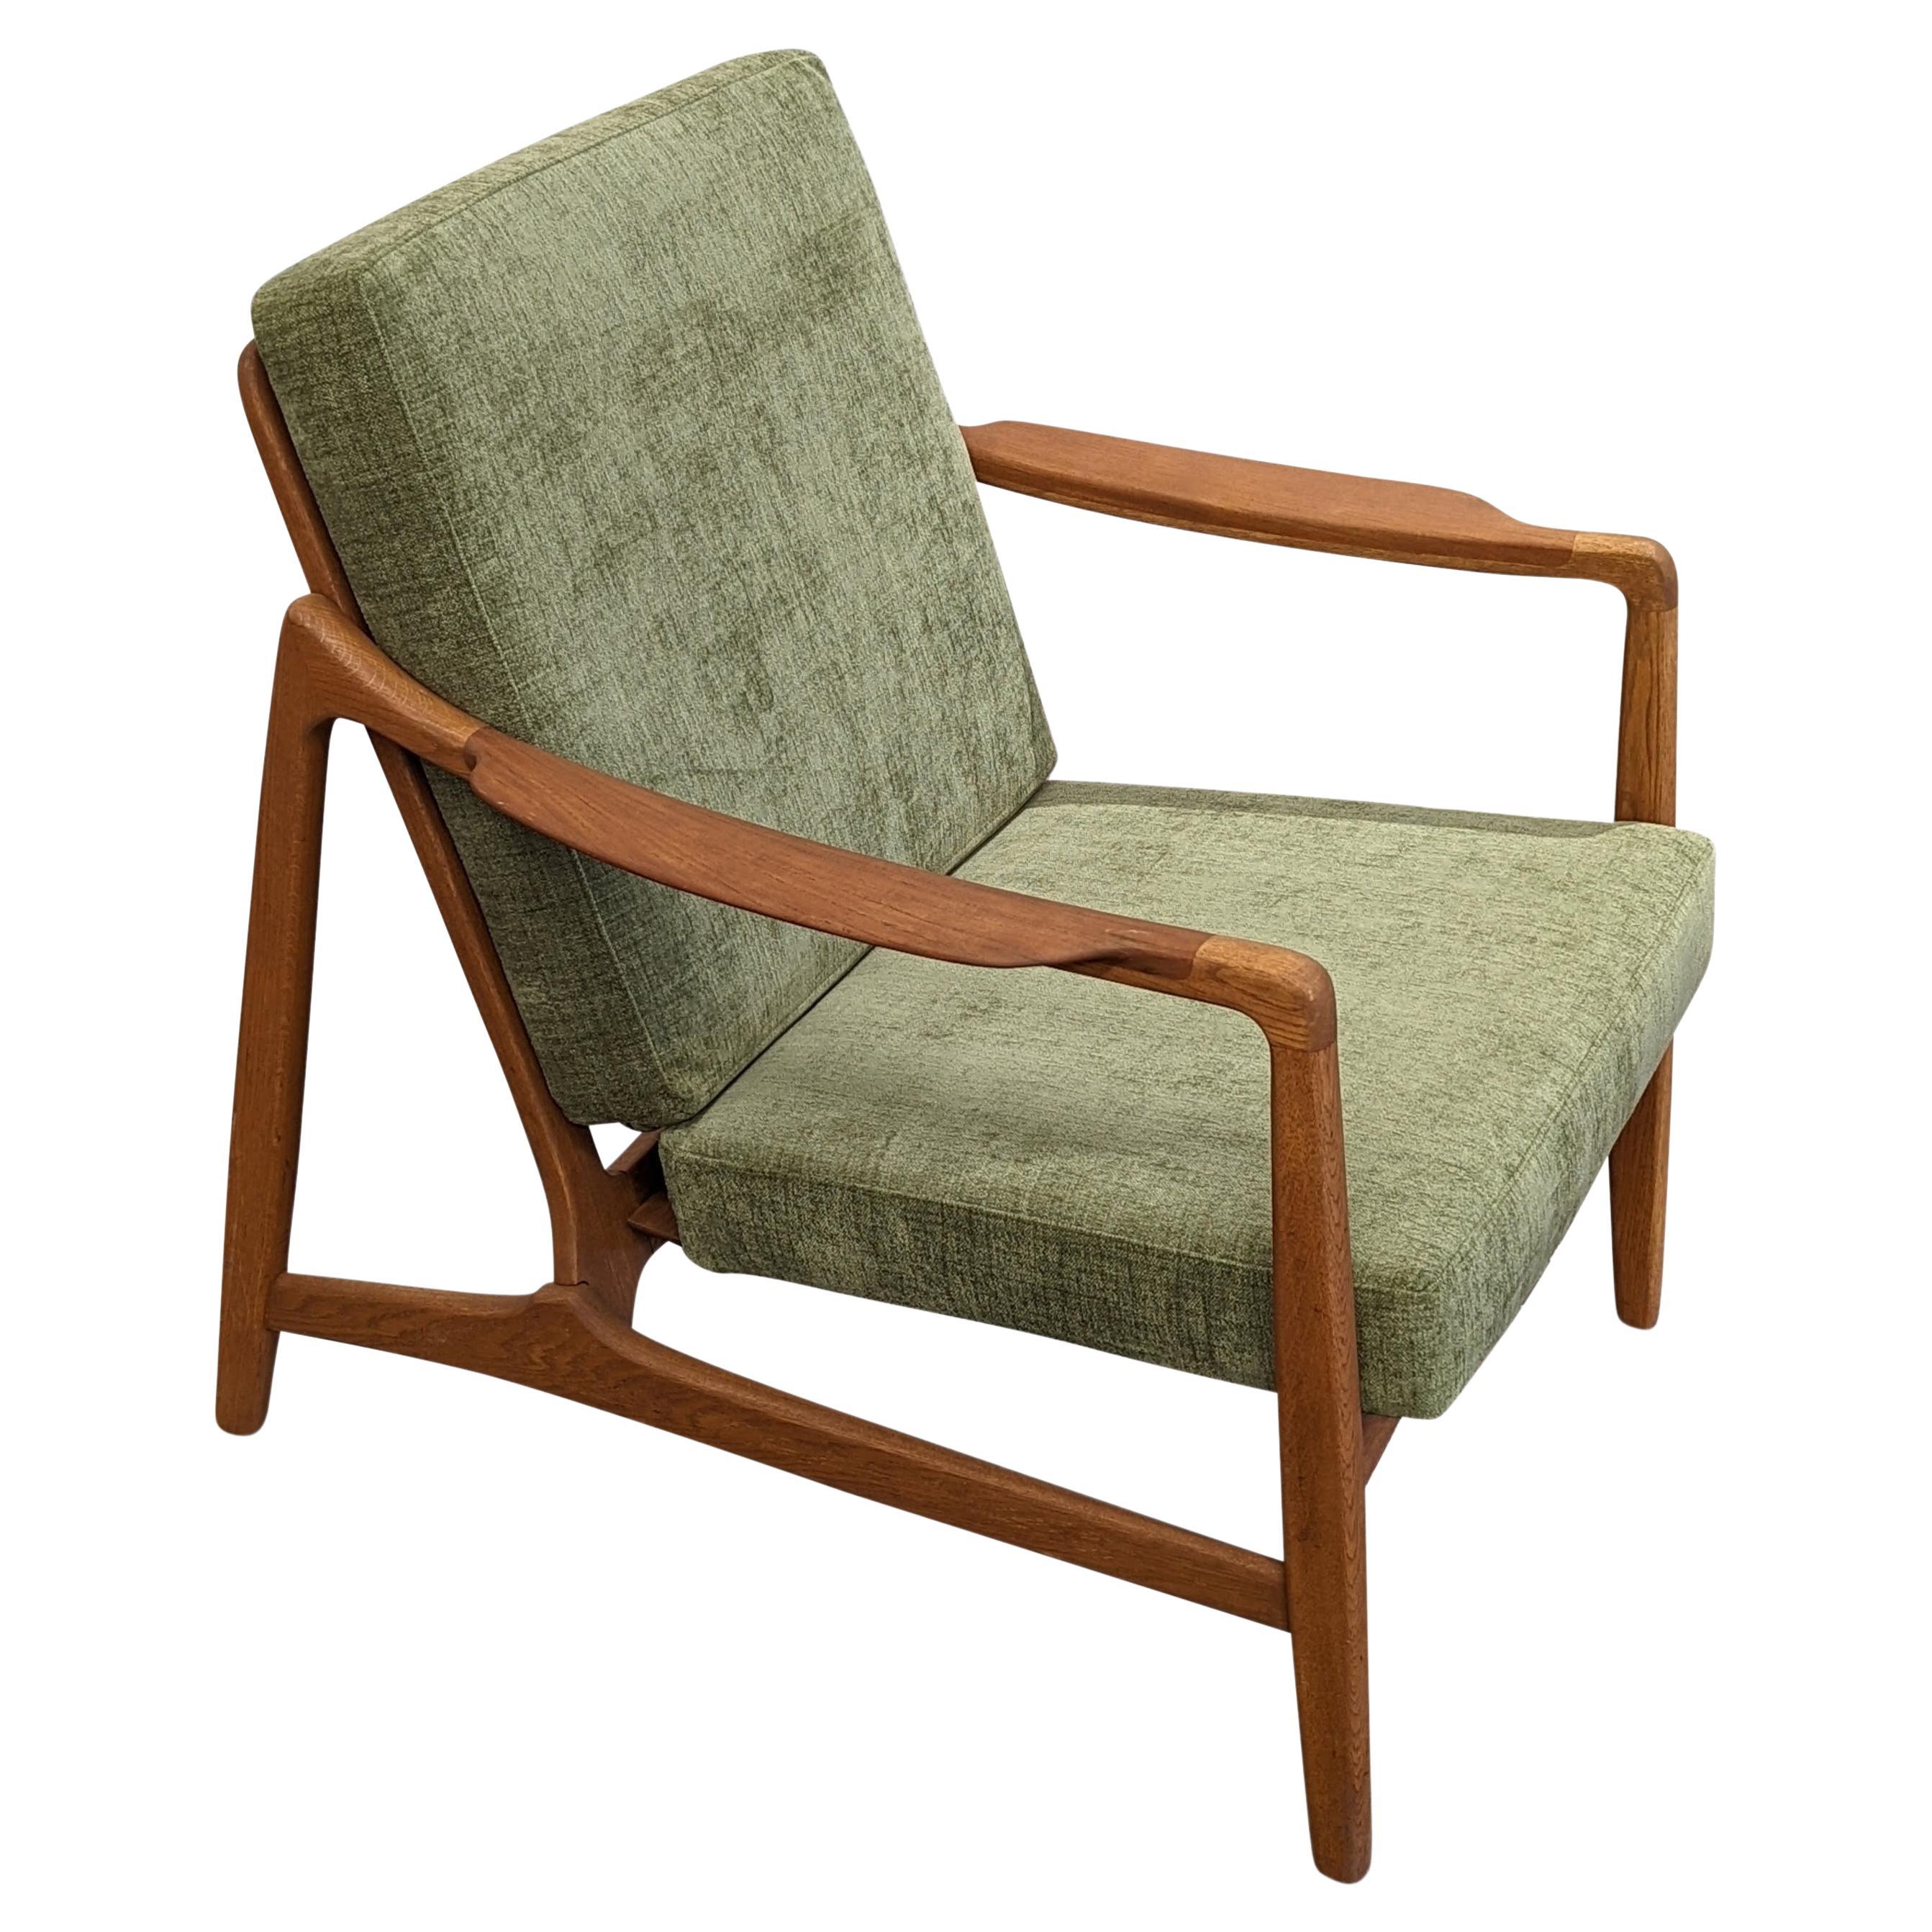 Vintage Tove & Edvard Kindt-Larsen Teak Lounge Chair, Danish Mid-Century